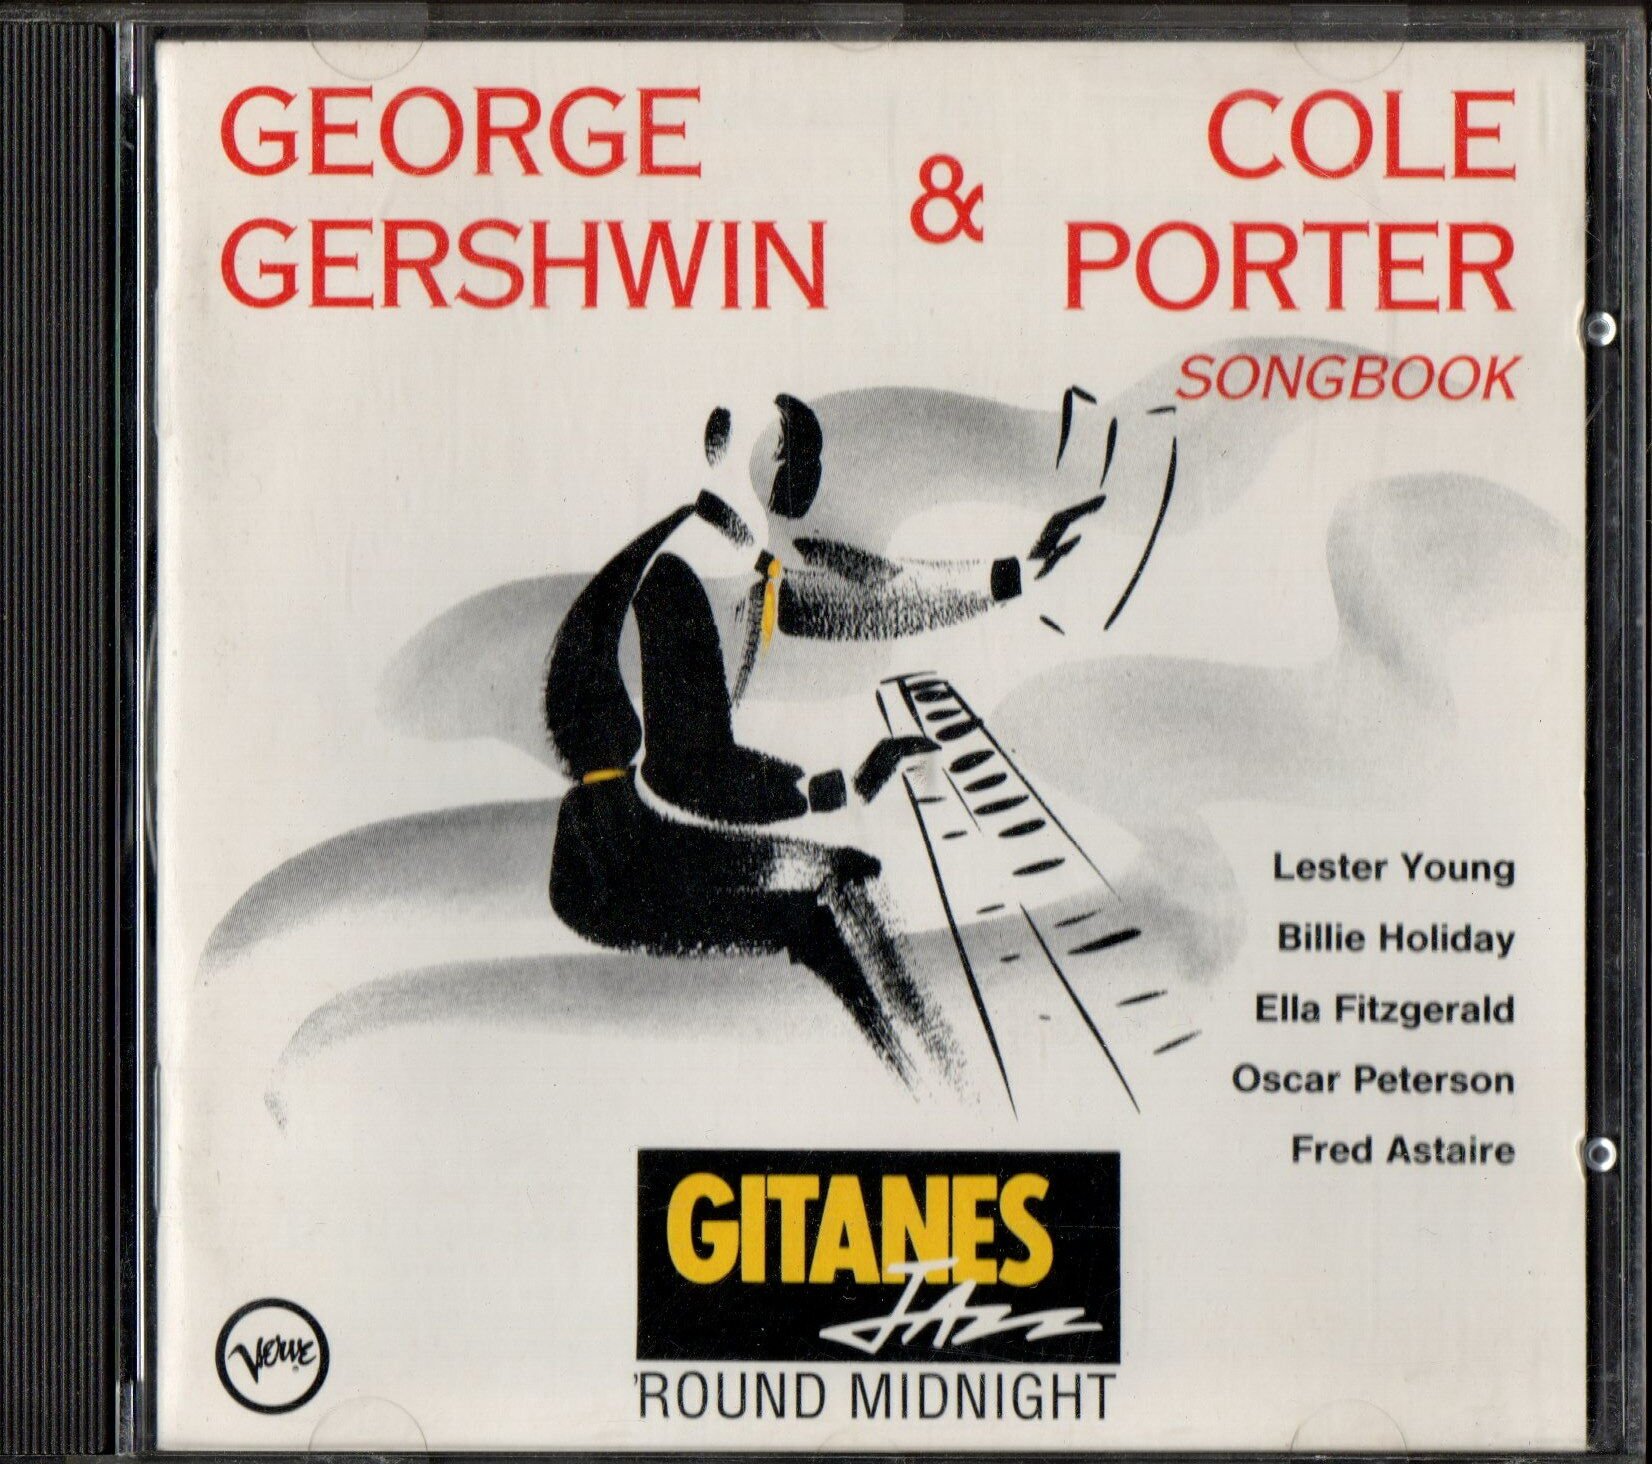 VARIOUS – GEORGE GERSHWIN & COLE PORTER SONGBOOK (1990) - CD 2.EL